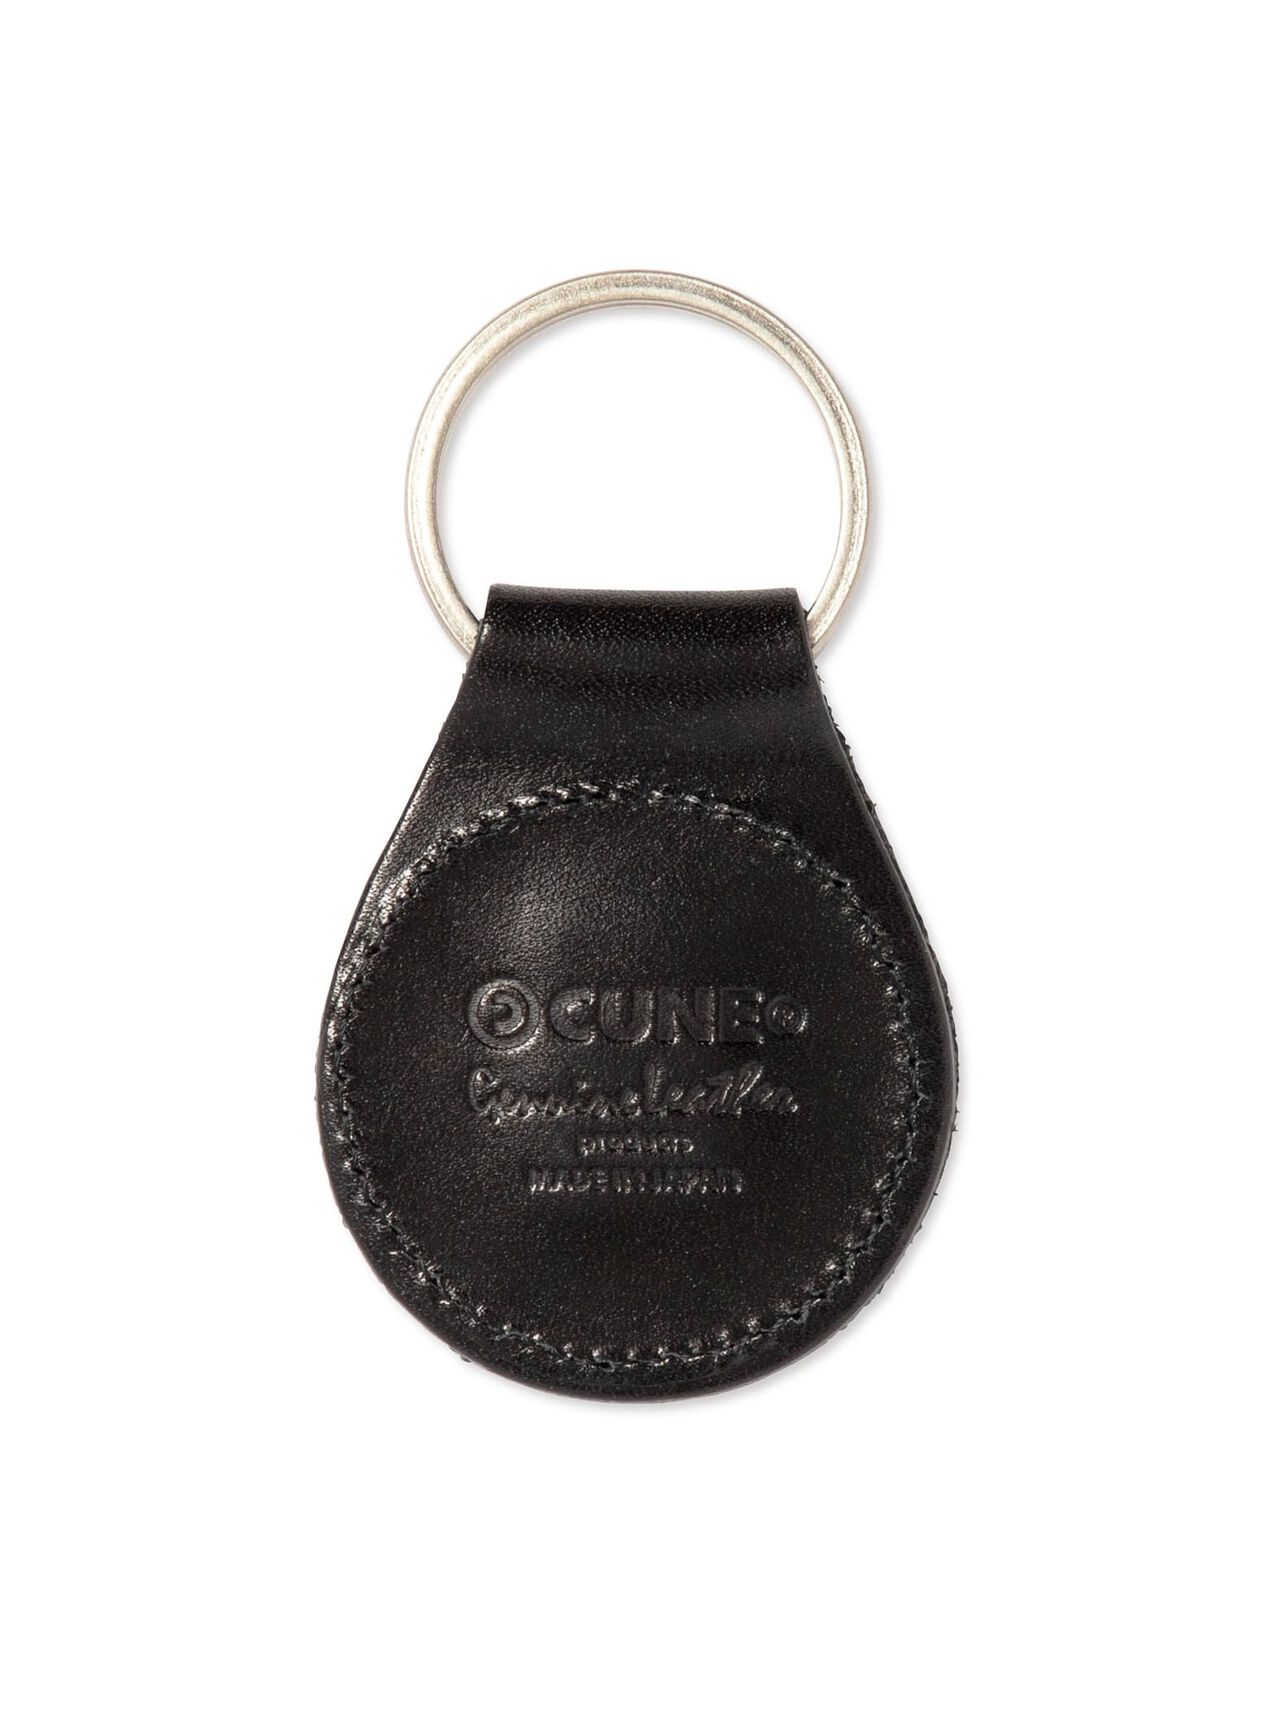 Rabbit studded leather round key ring,ONE, large image number 1